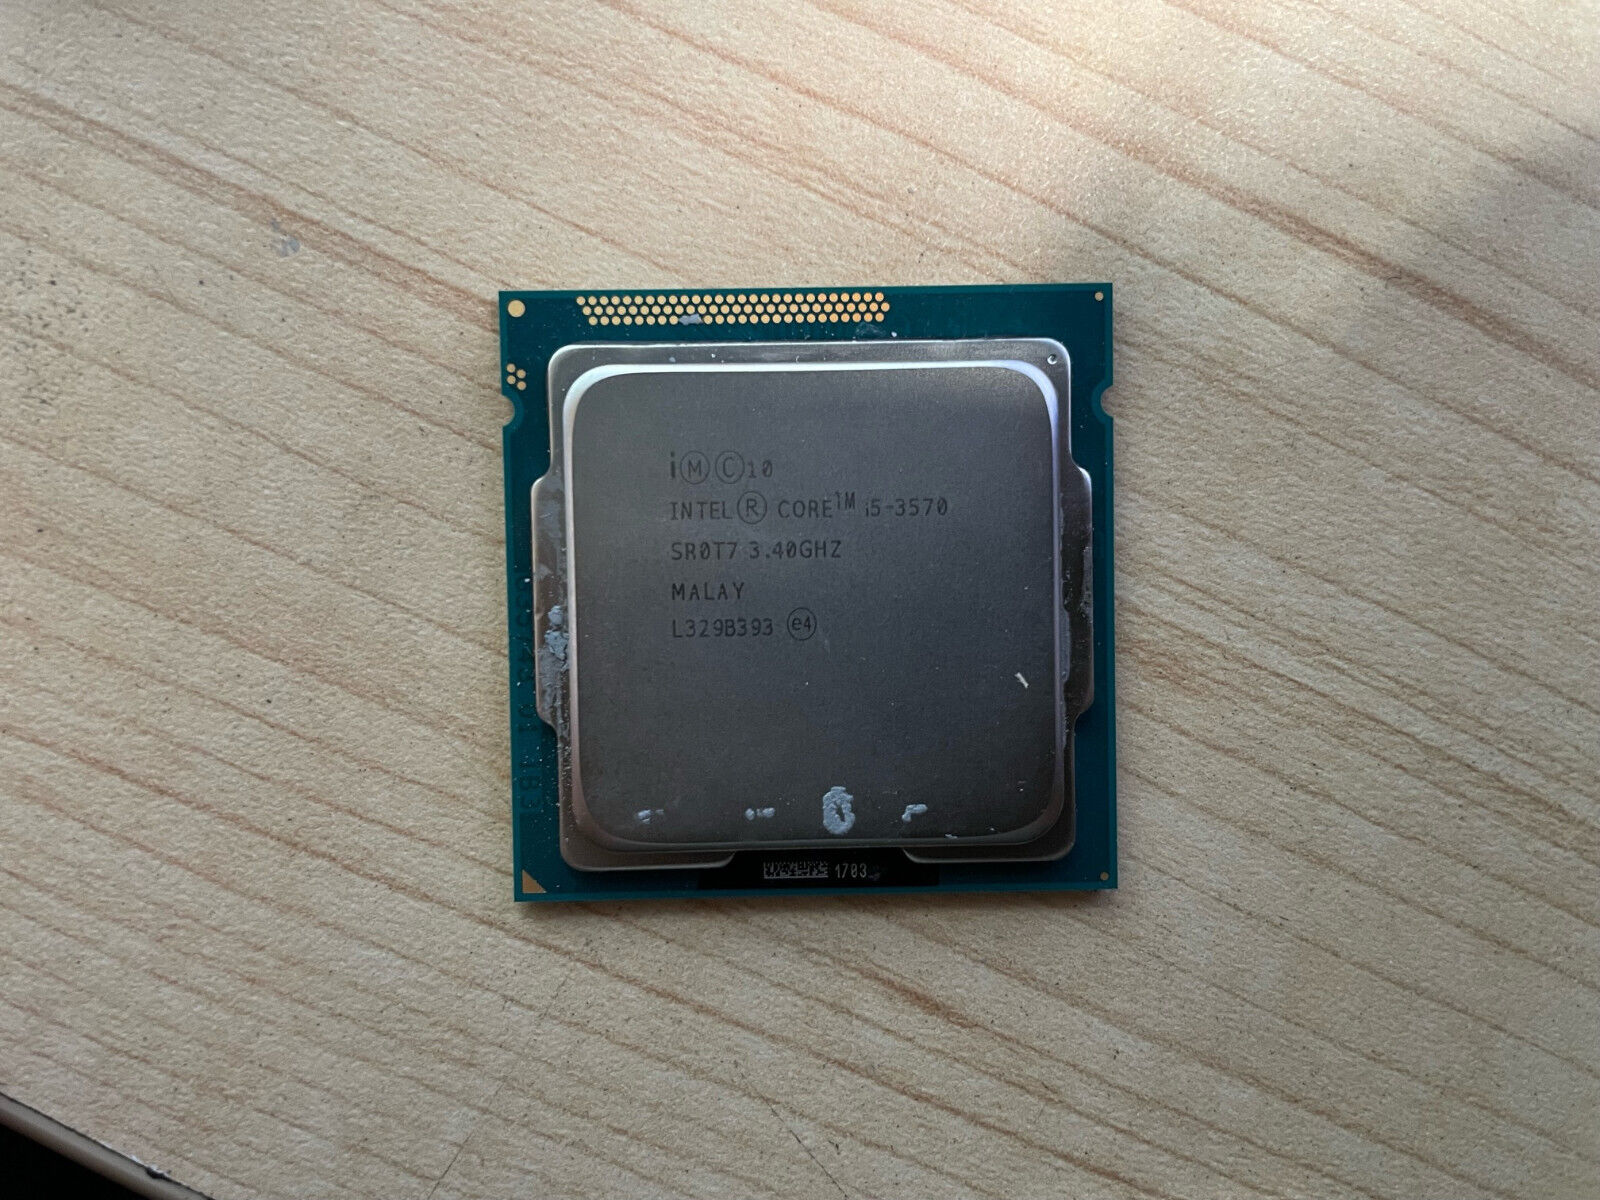 Intel Core i5-3570 3.4GHz 4 6MB Cache Socket LGA1155 CPU Processor SR0T7